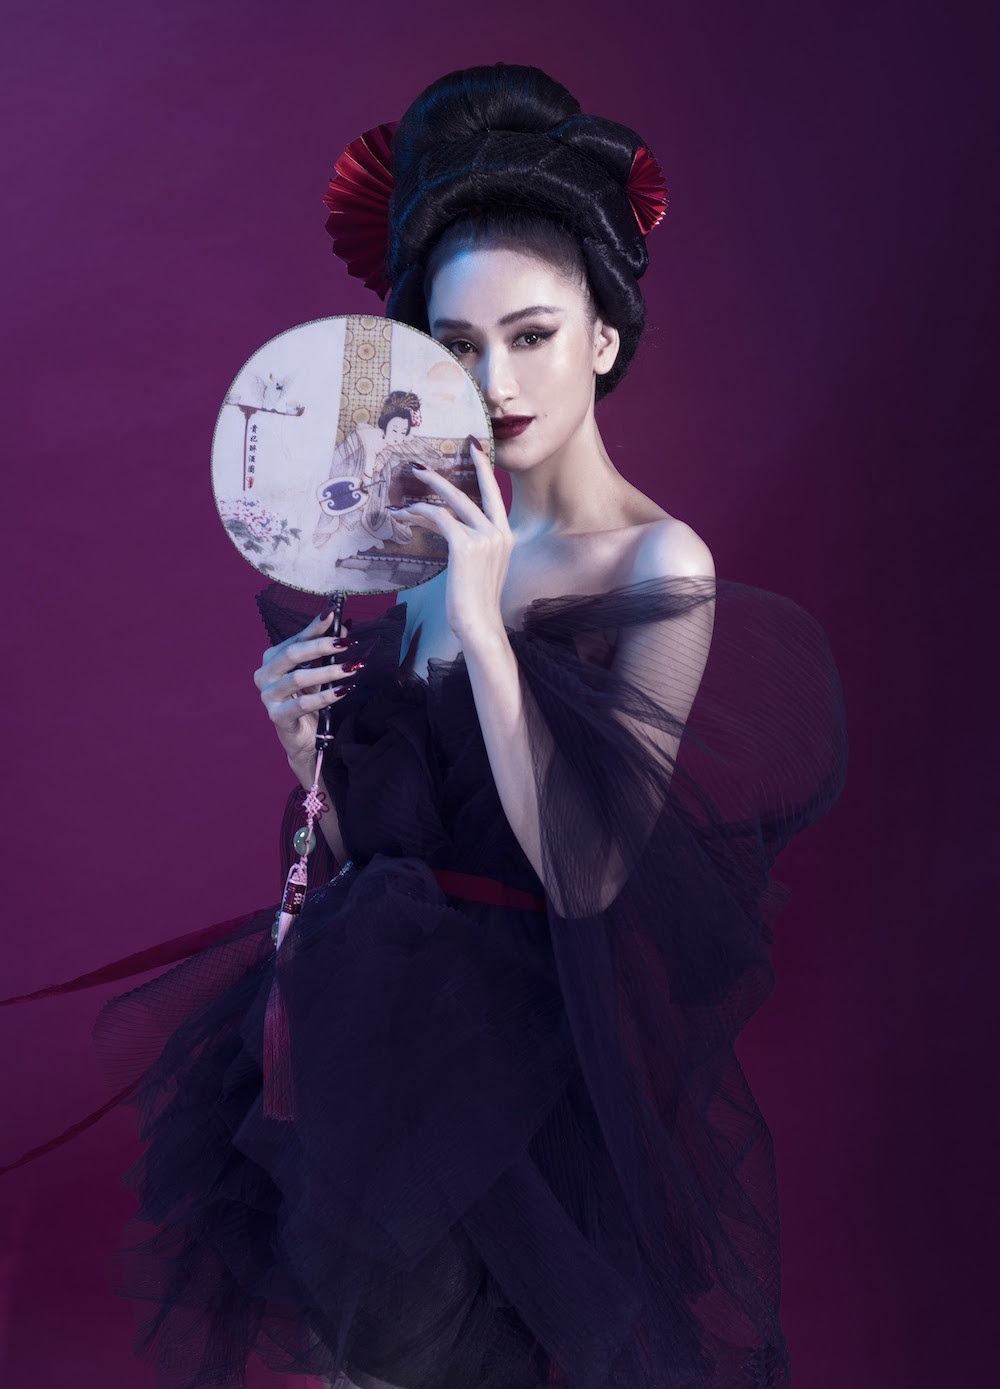 Á hậu Hà Thu đẹp ma mị với phong cách liêu trai trong bộ đầm voan đen hở vai vô cùng gợi cảm, hút mắt